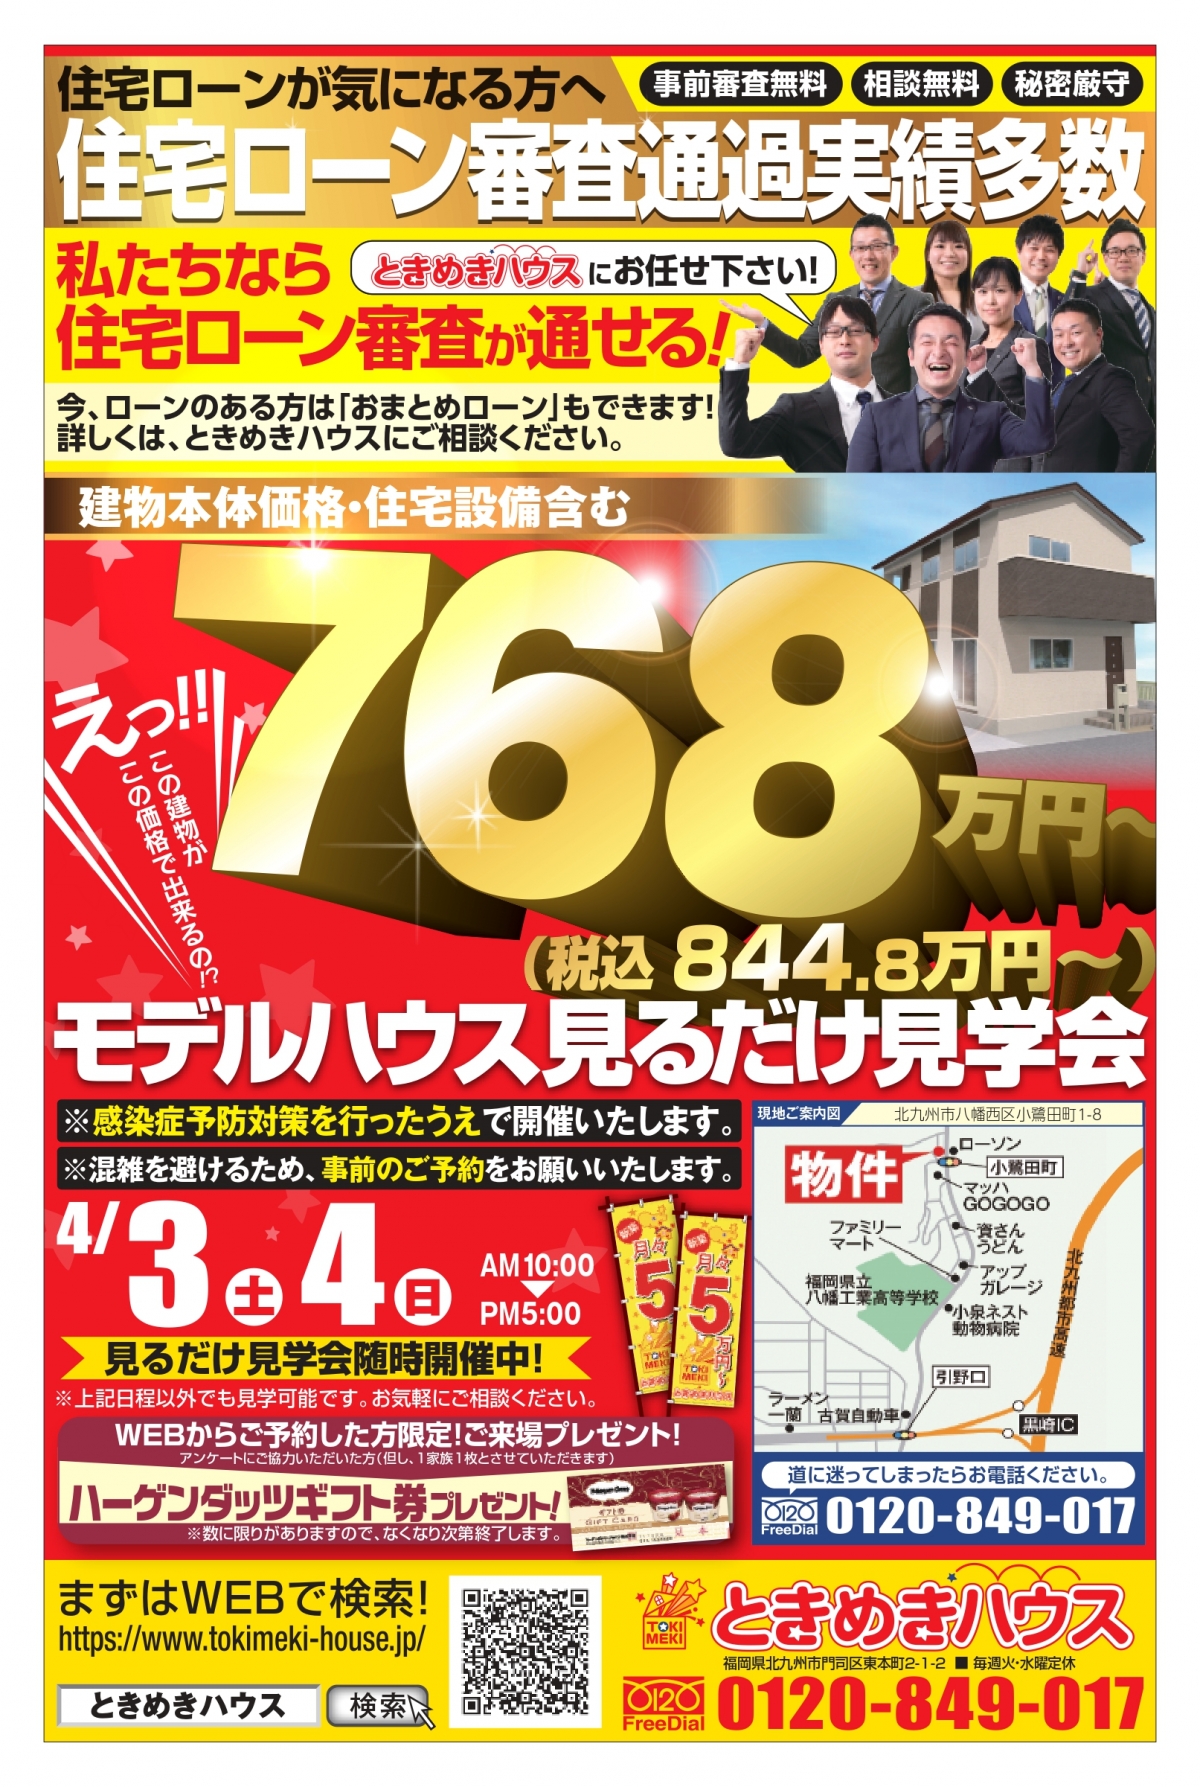 4月3日 土 4日 日 に小倉南区中吉田でローコスト新築注文住宅のモデルハウス見学会開催